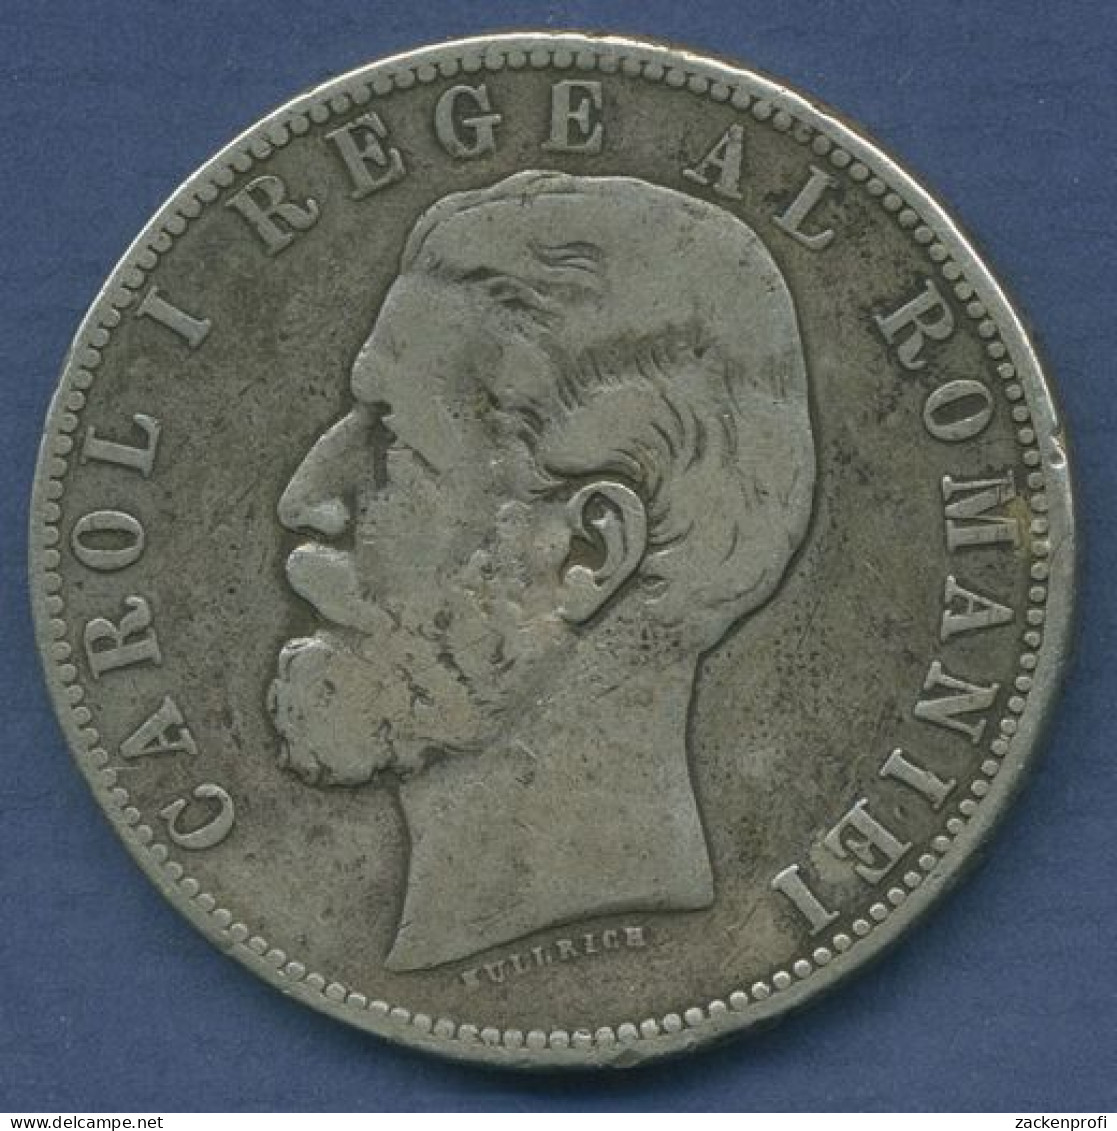 Rumänien 5 Lei 1883 B, Carol I., KM 17.1 Schön - Sehr Schön (m3937) - Roemenië